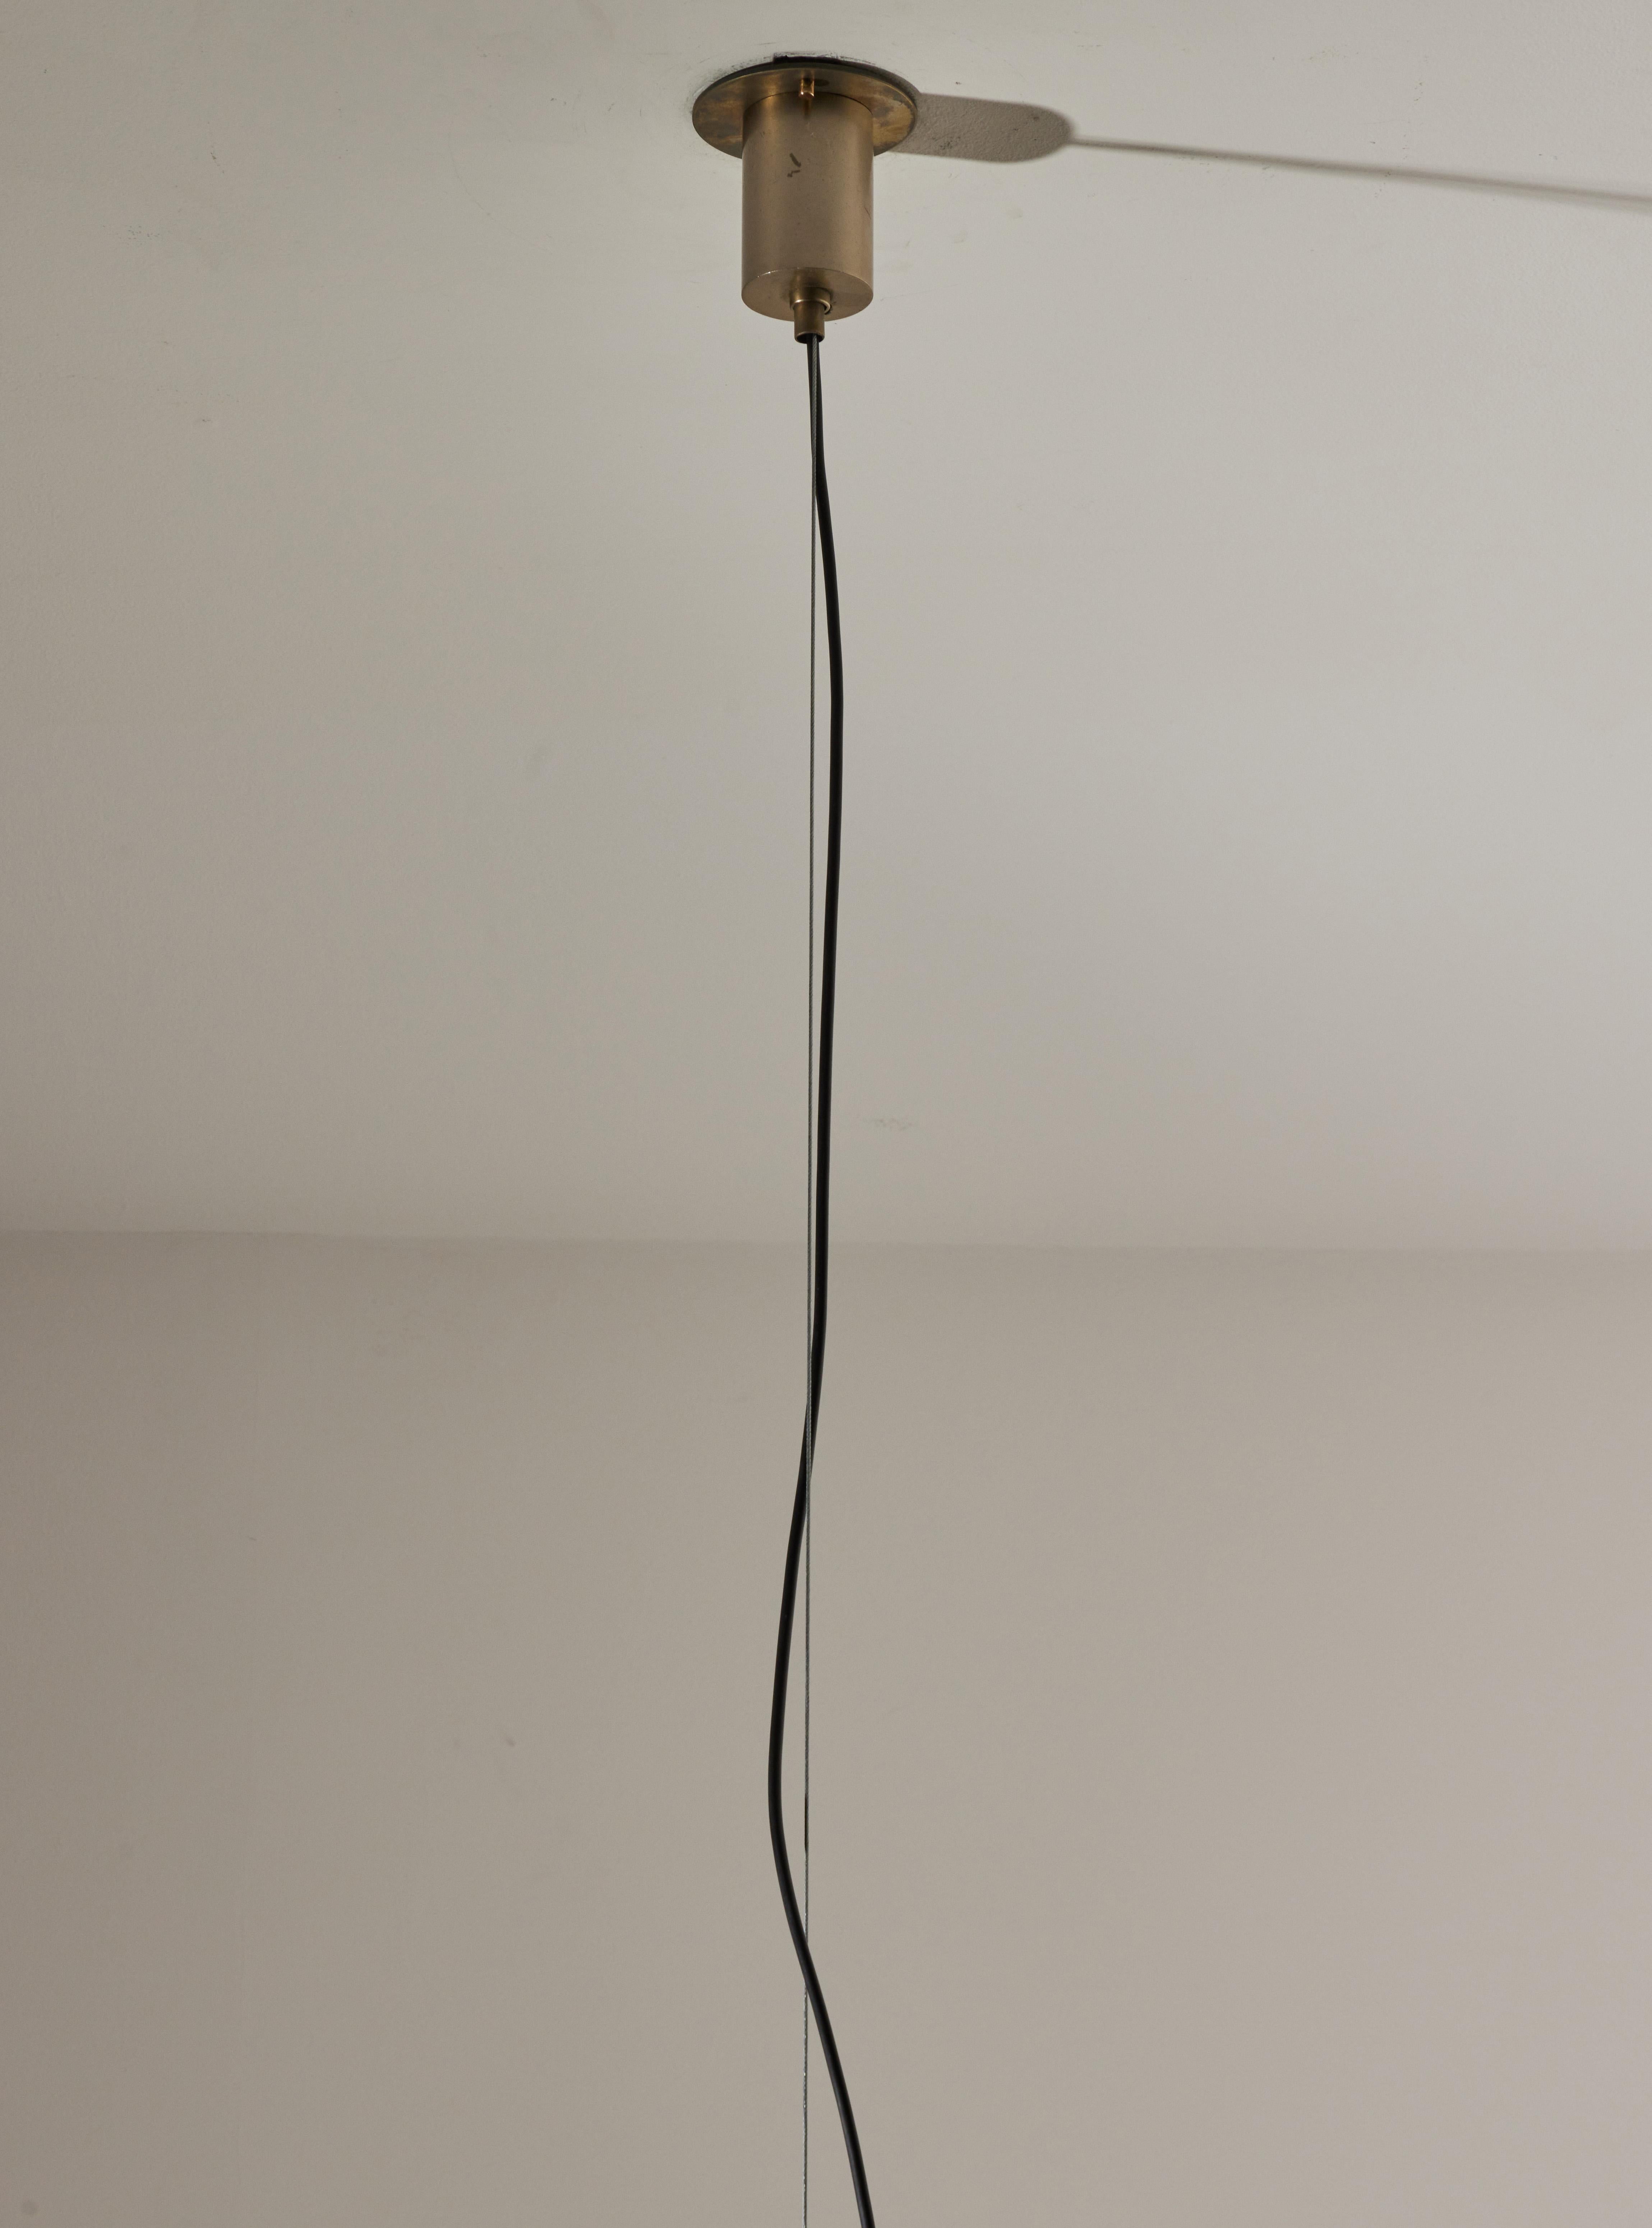 Suspension Light by Fontana Arte 3